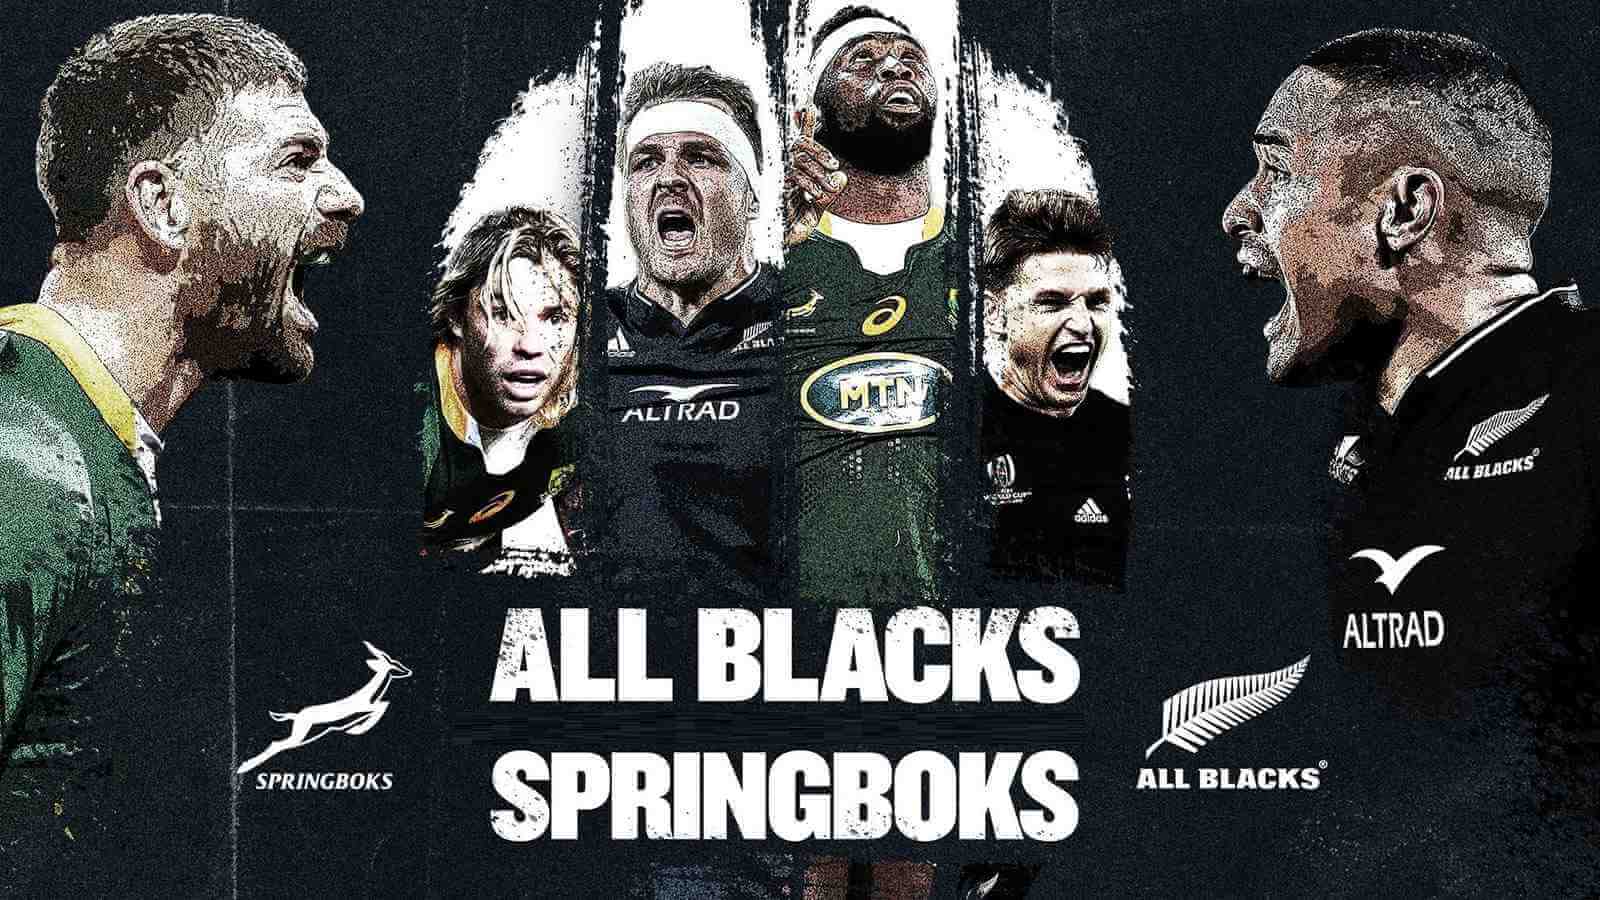 Springboks VS All Blacks Rugby Live Stream